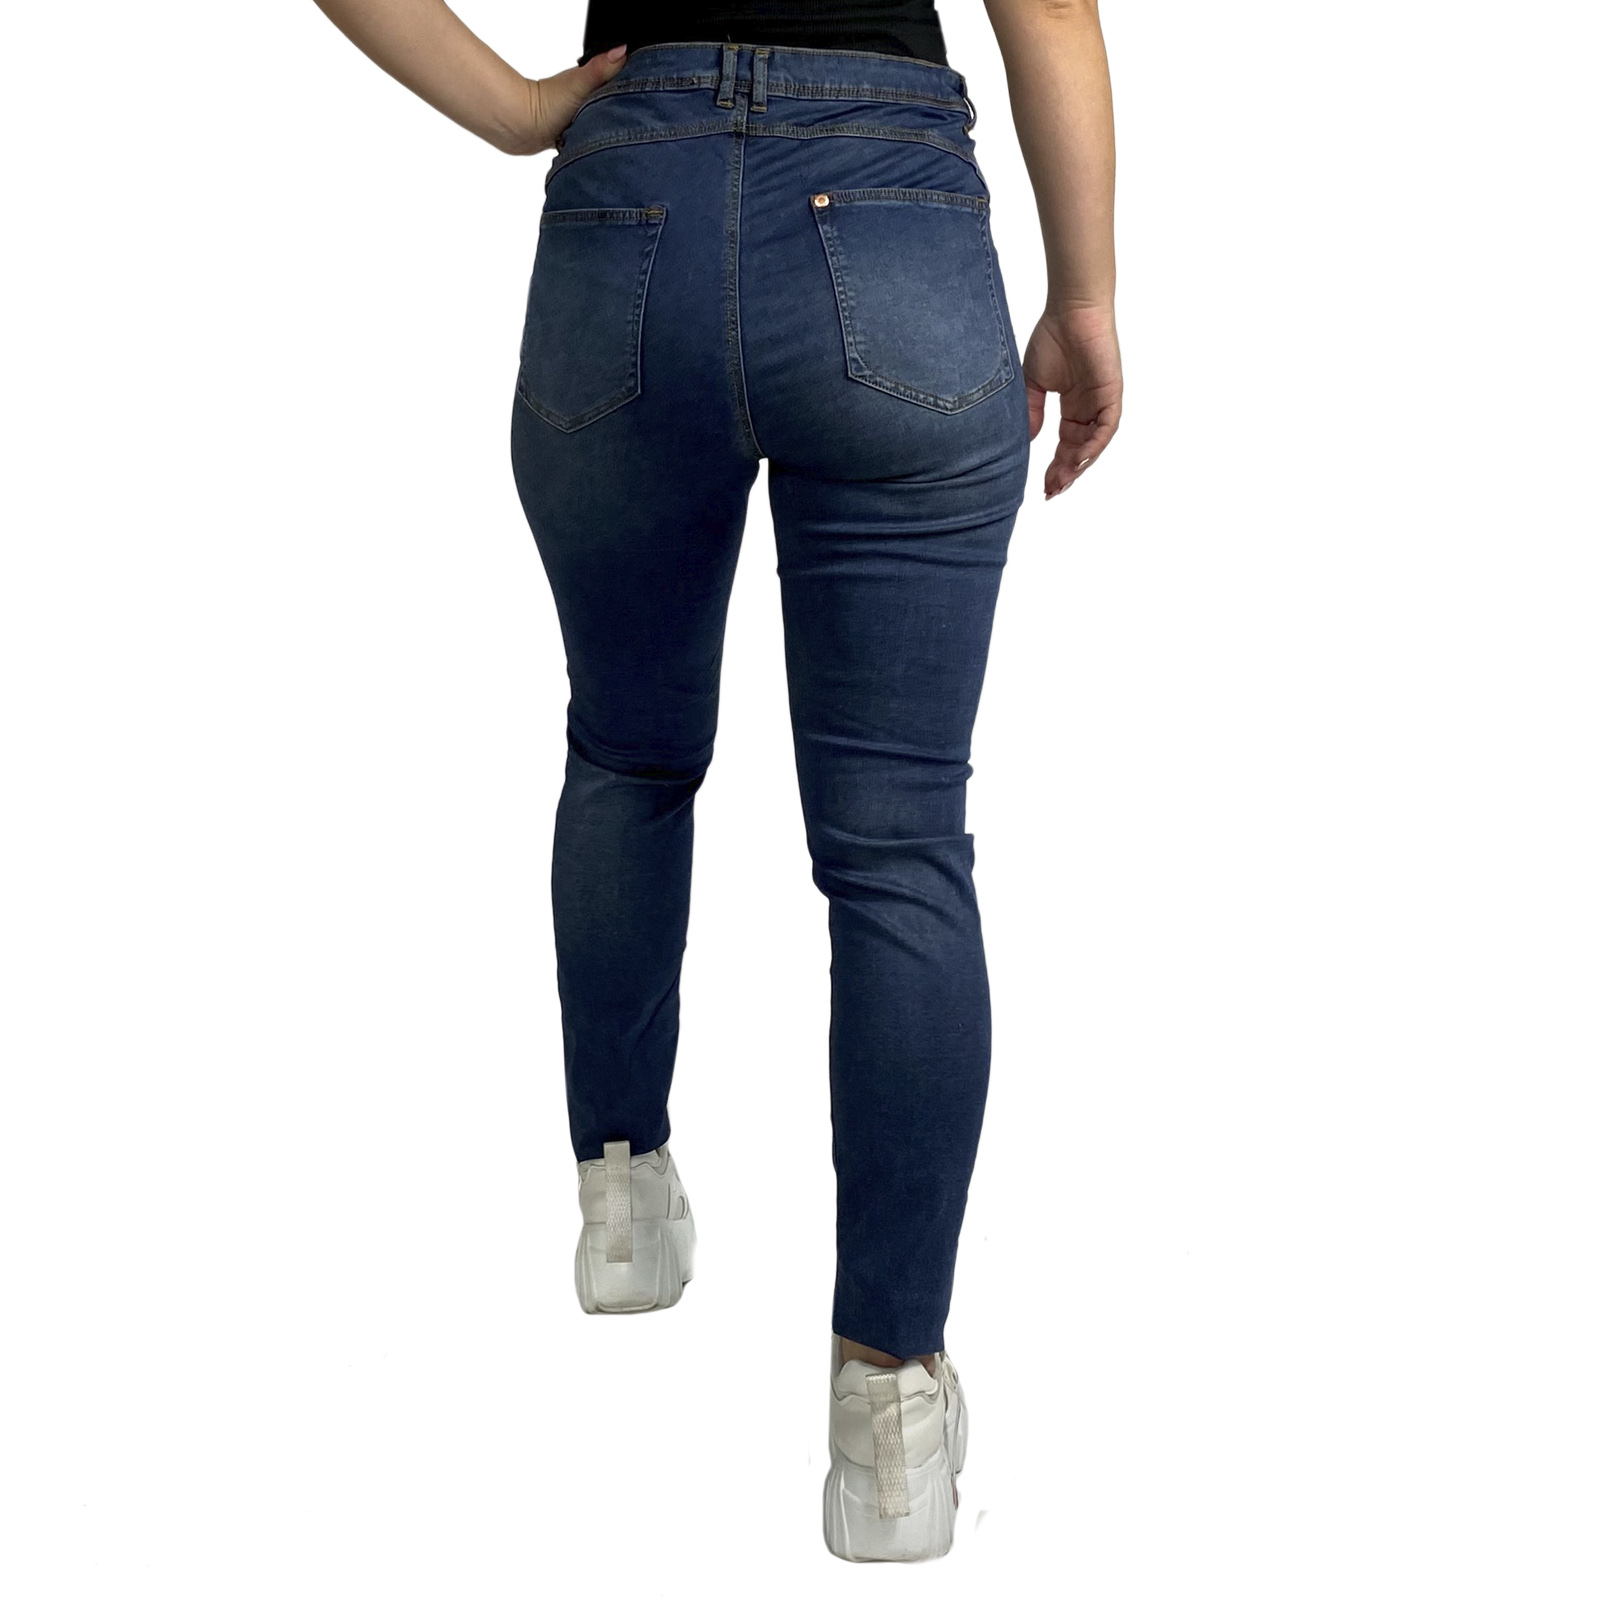 Модные женские джинсы из брендовых коллекций – все размеры